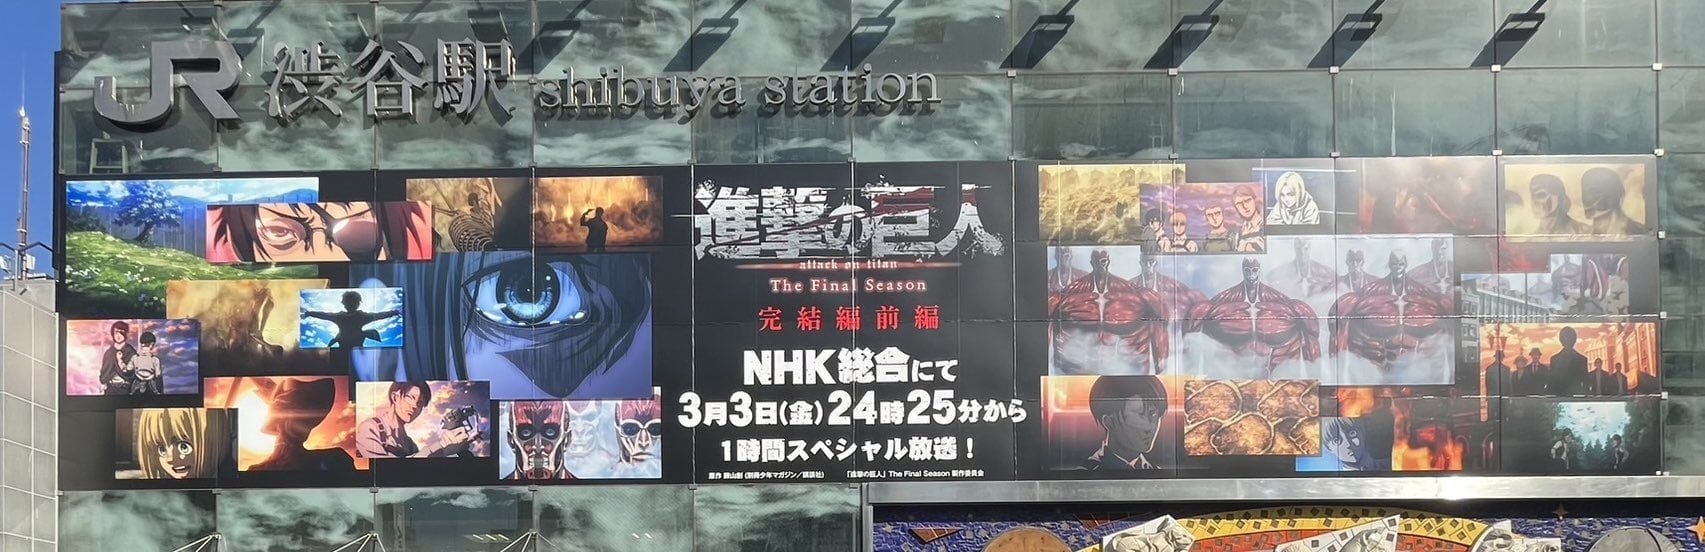 L'Attaque des Titans envahit Shibuya : L'affiche de la saison finale - Partie 3 4